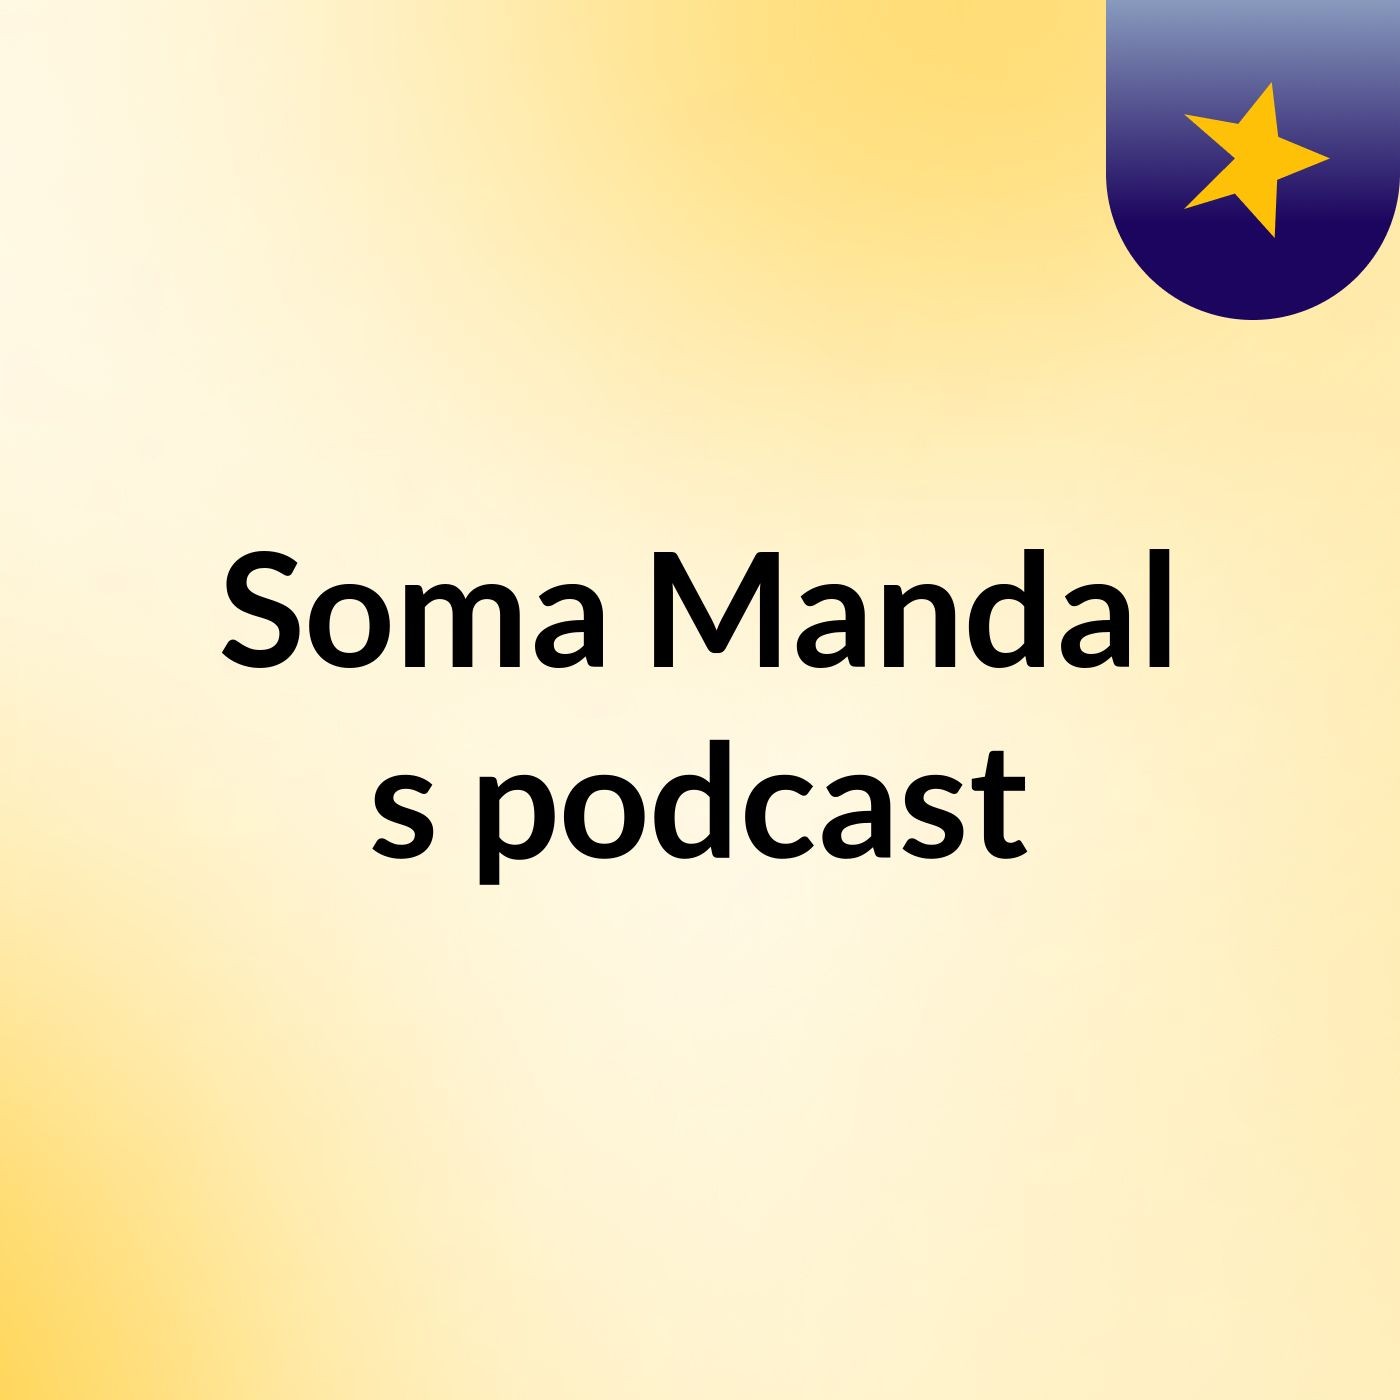 Soma Mandal's podcast